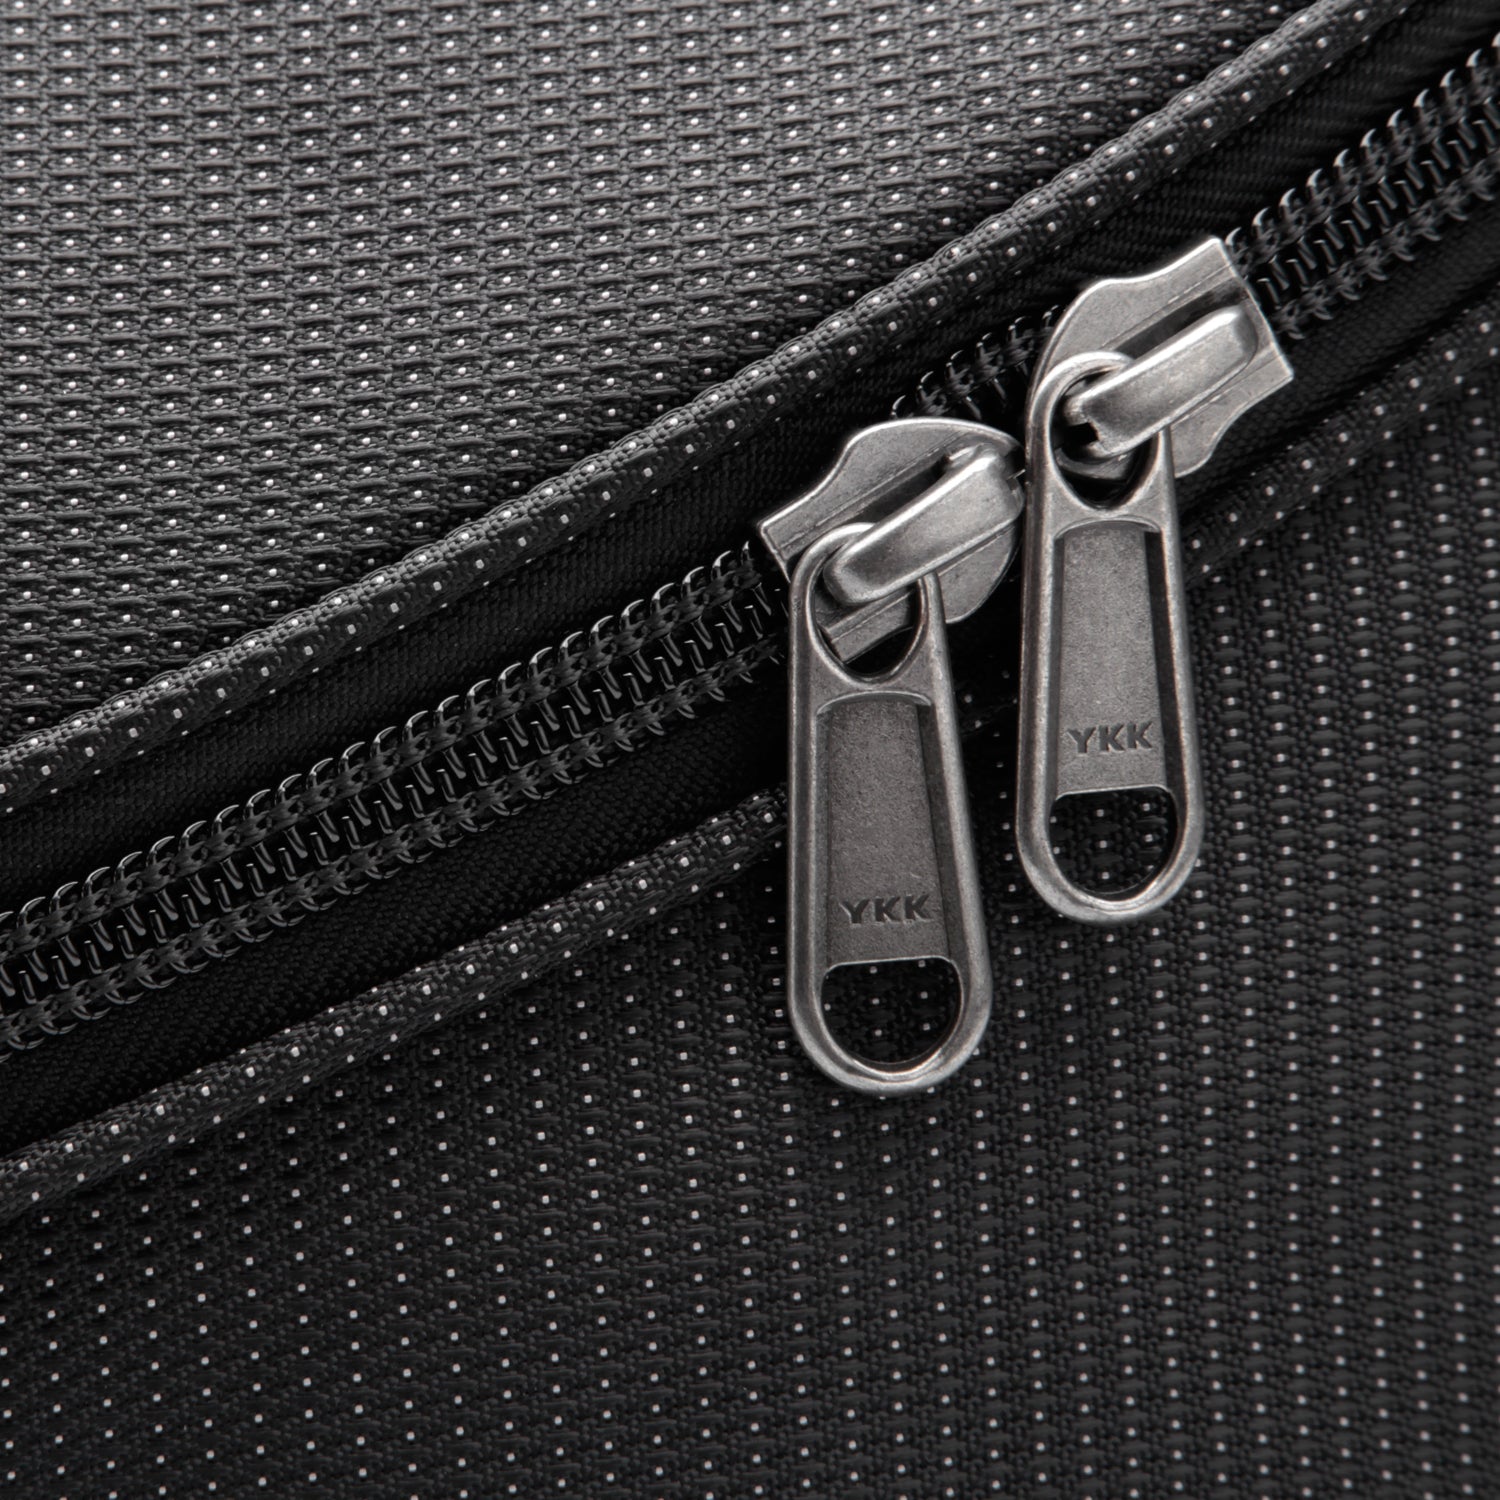 Laptop Backpack Travel Bag - Uno I Black - NIID